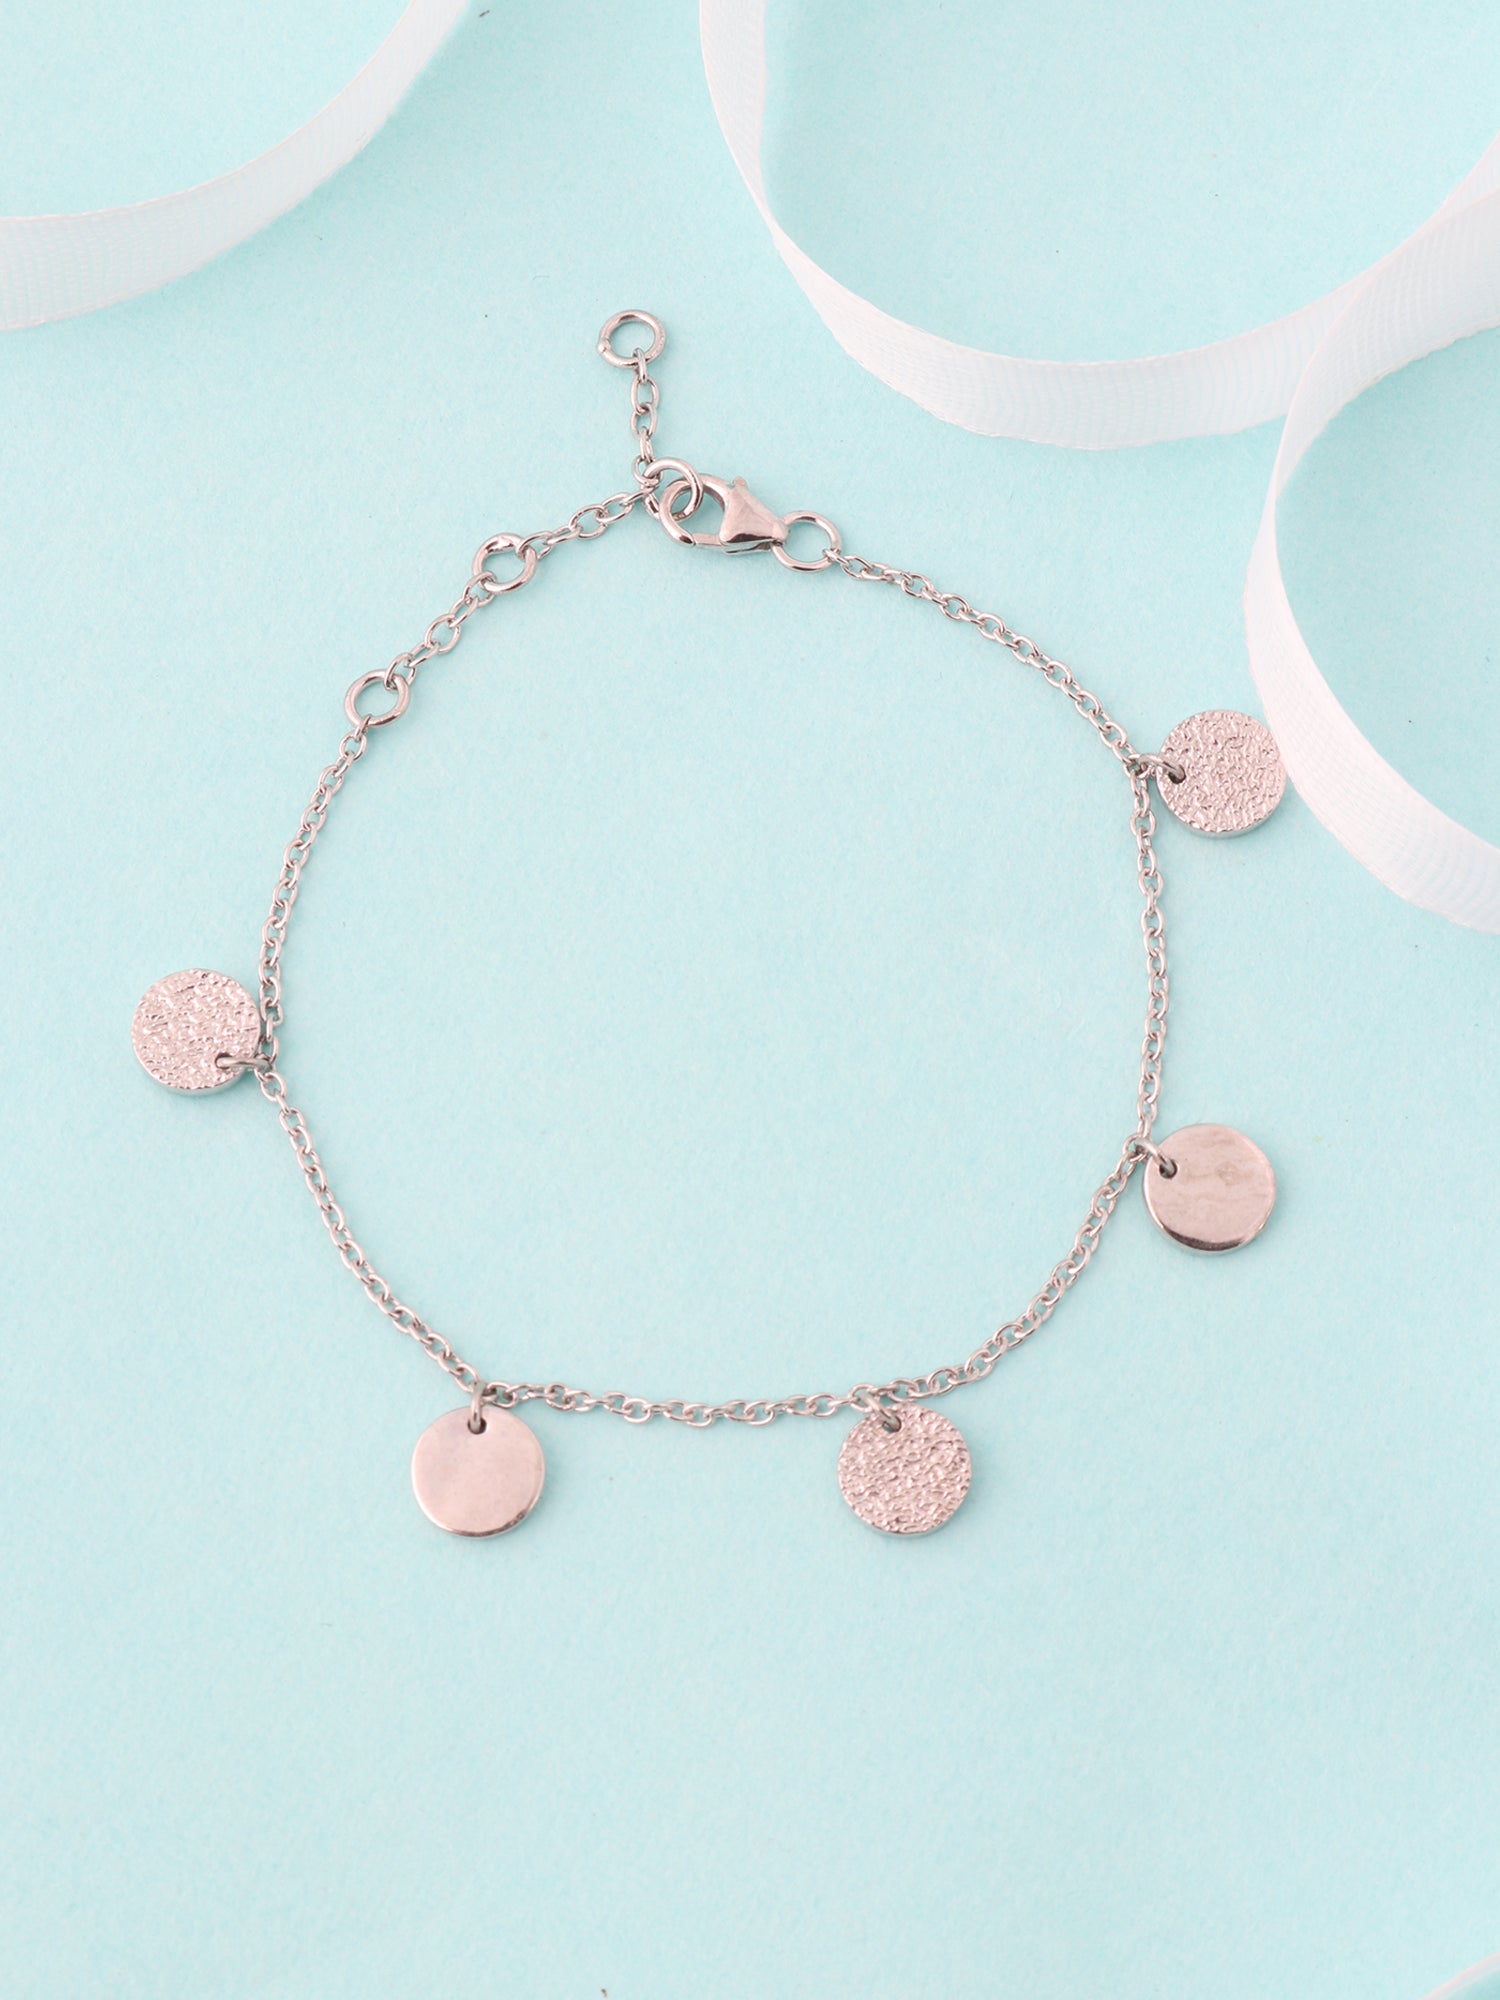 Disc Charm Bracelet For Women In Silver-1